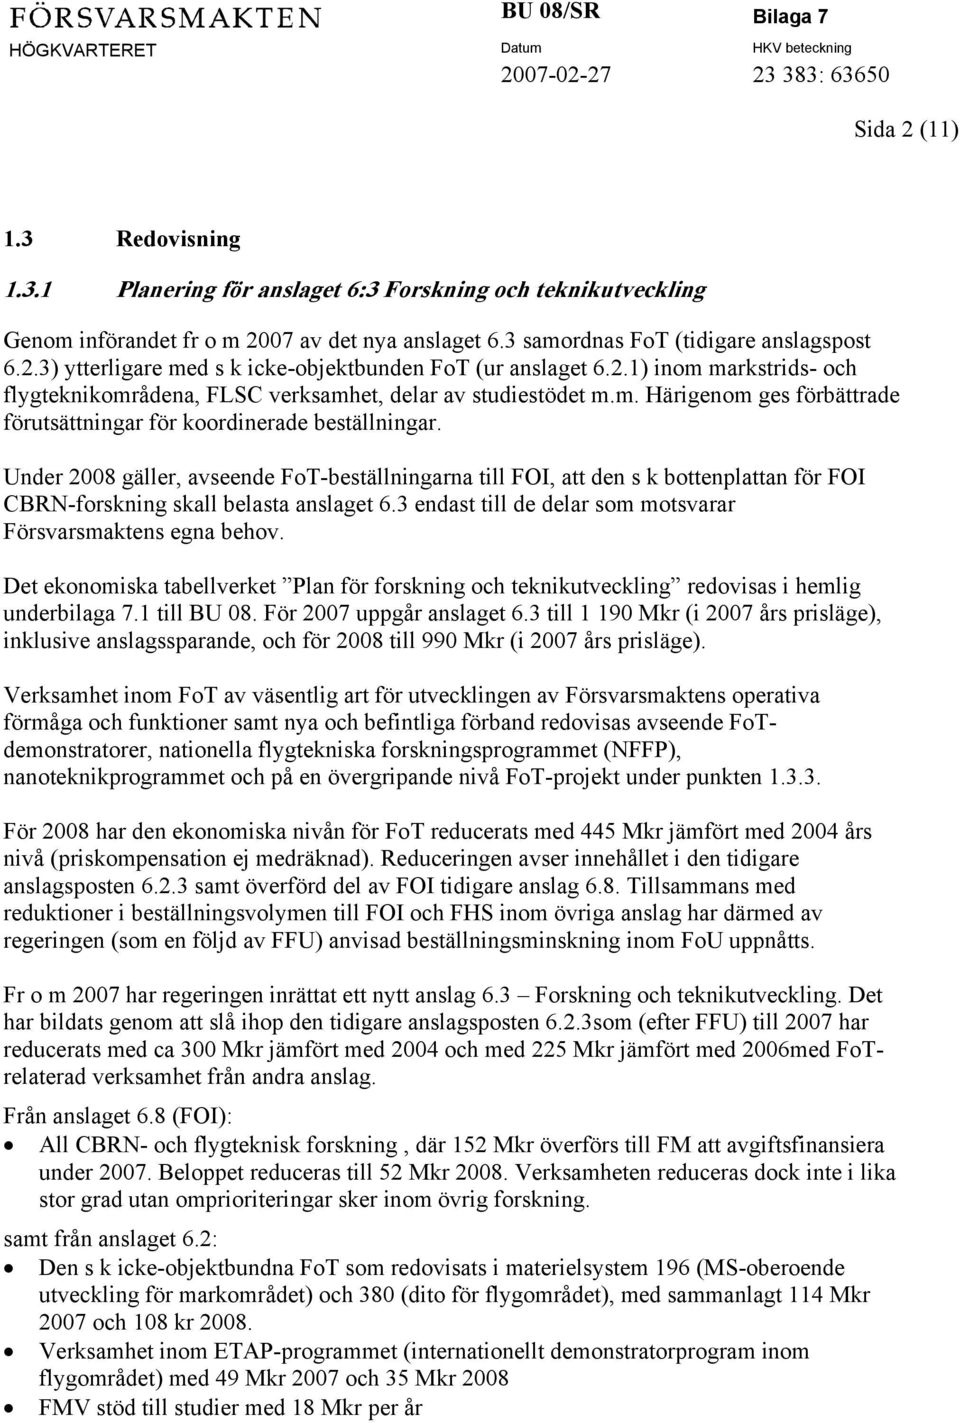 Under 2008 gäller, avseende FoT-beställningarna till FOI, att den s k bottenplattan för FOI CBRN-forskning skall belasta anslaget 6.3 endast till de delar som motsvarar Försvarsmaktens egna behov.